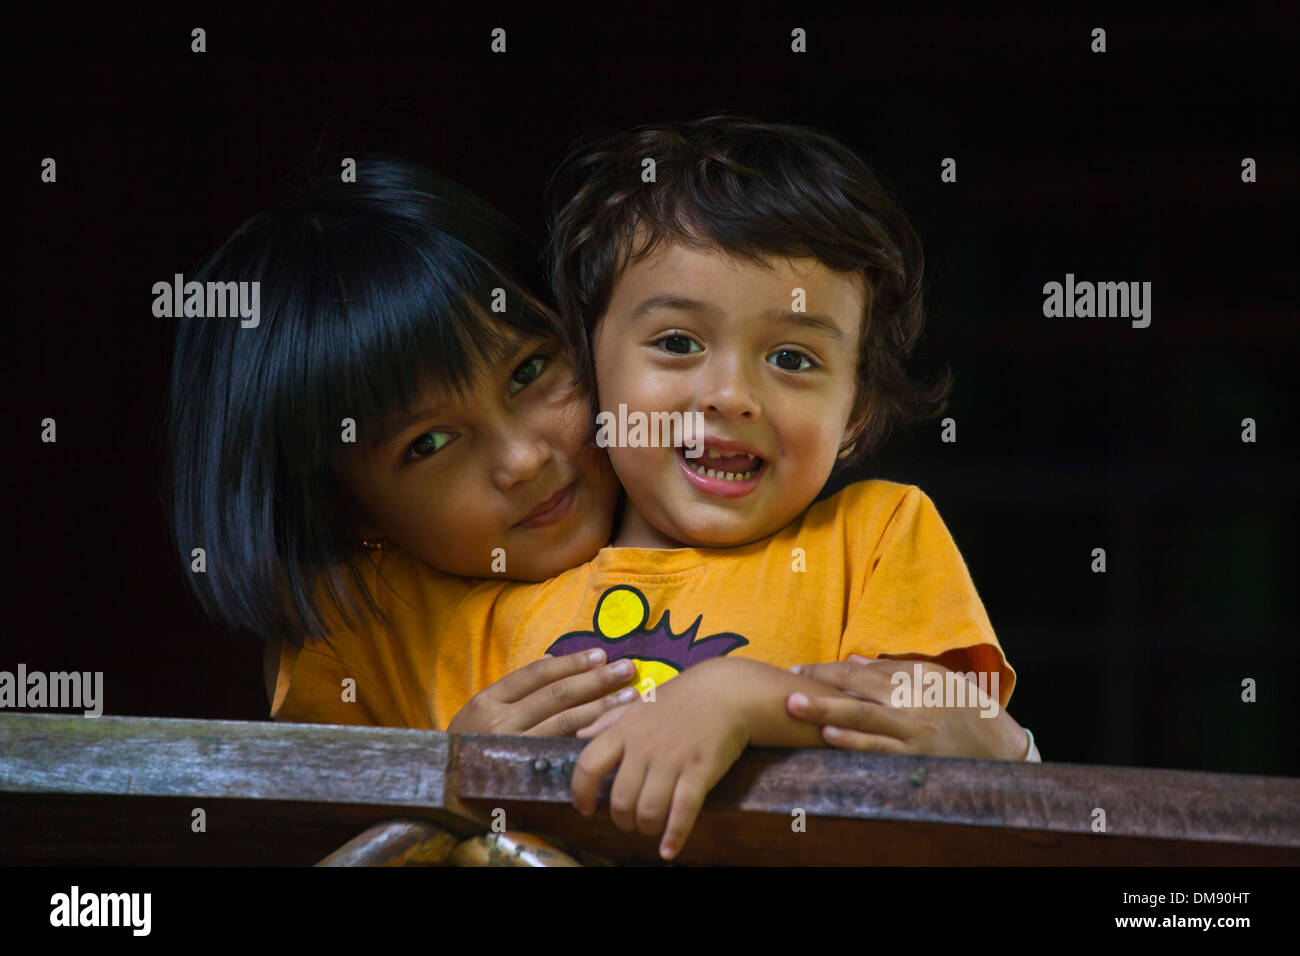 La moitié d'une moitié Thaï American boy avec son ami birman - Thaïlande Banque D'Images